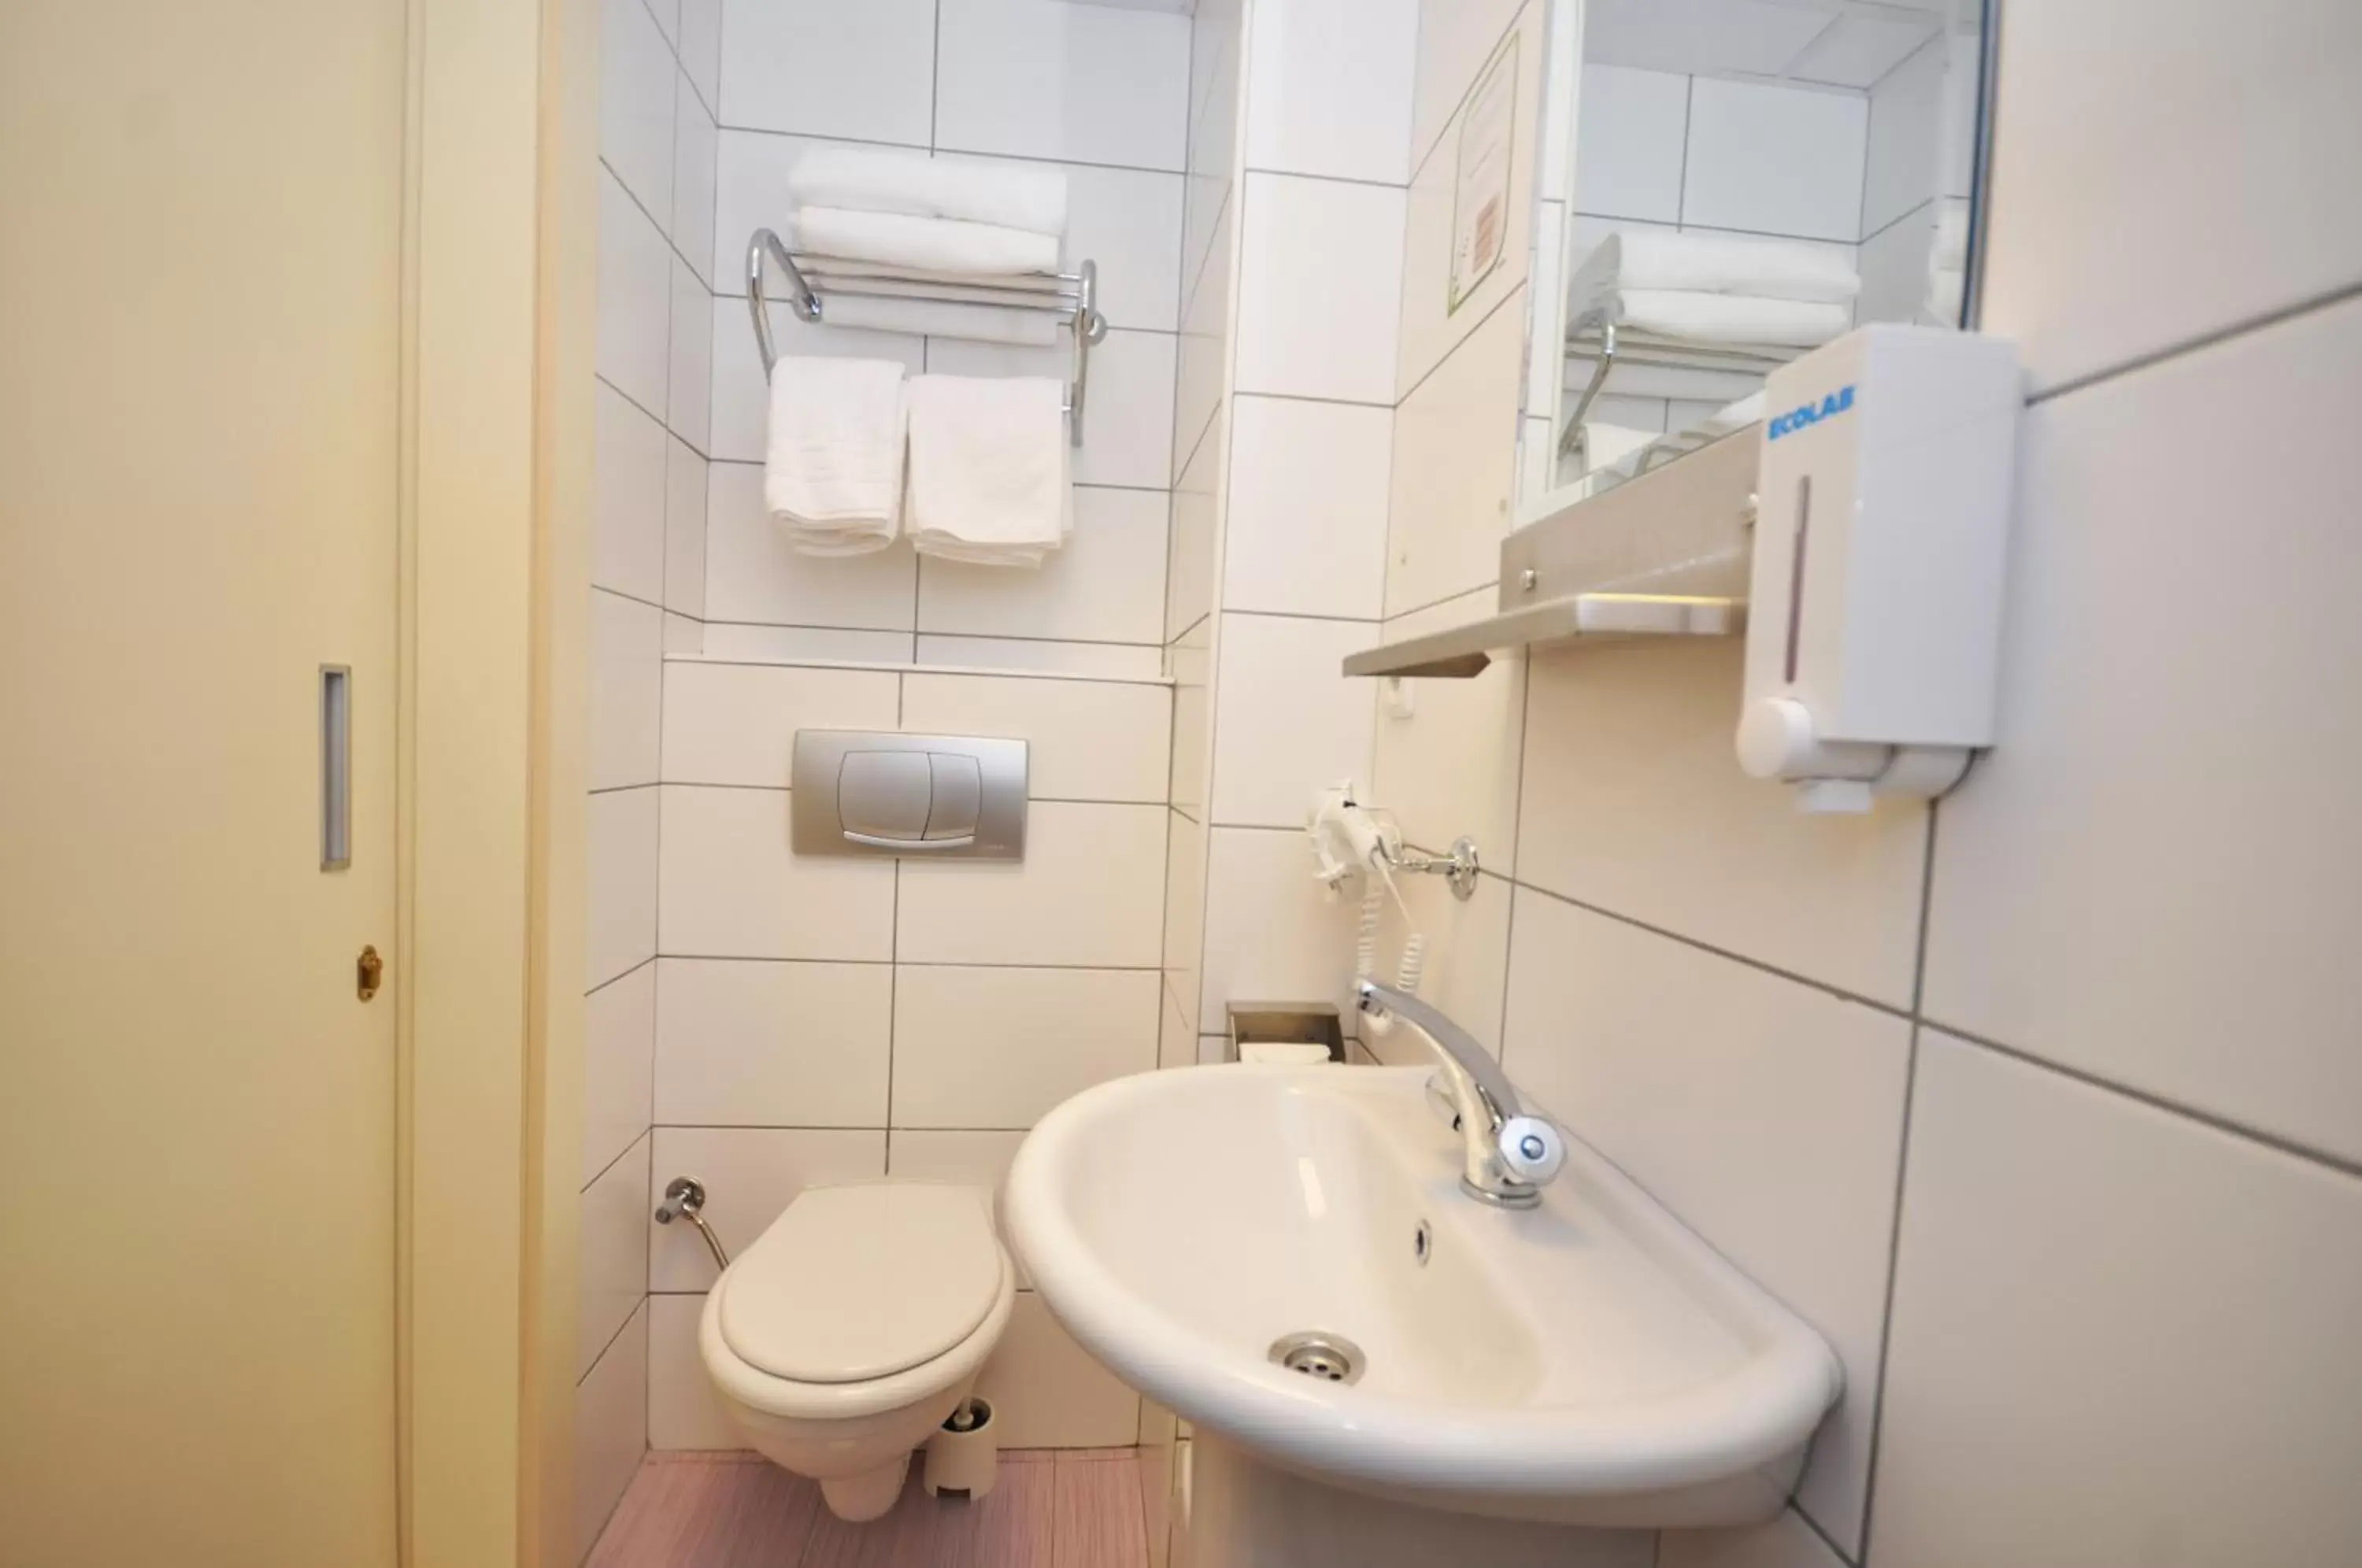 Toilet, Bathroom in Han Hotel